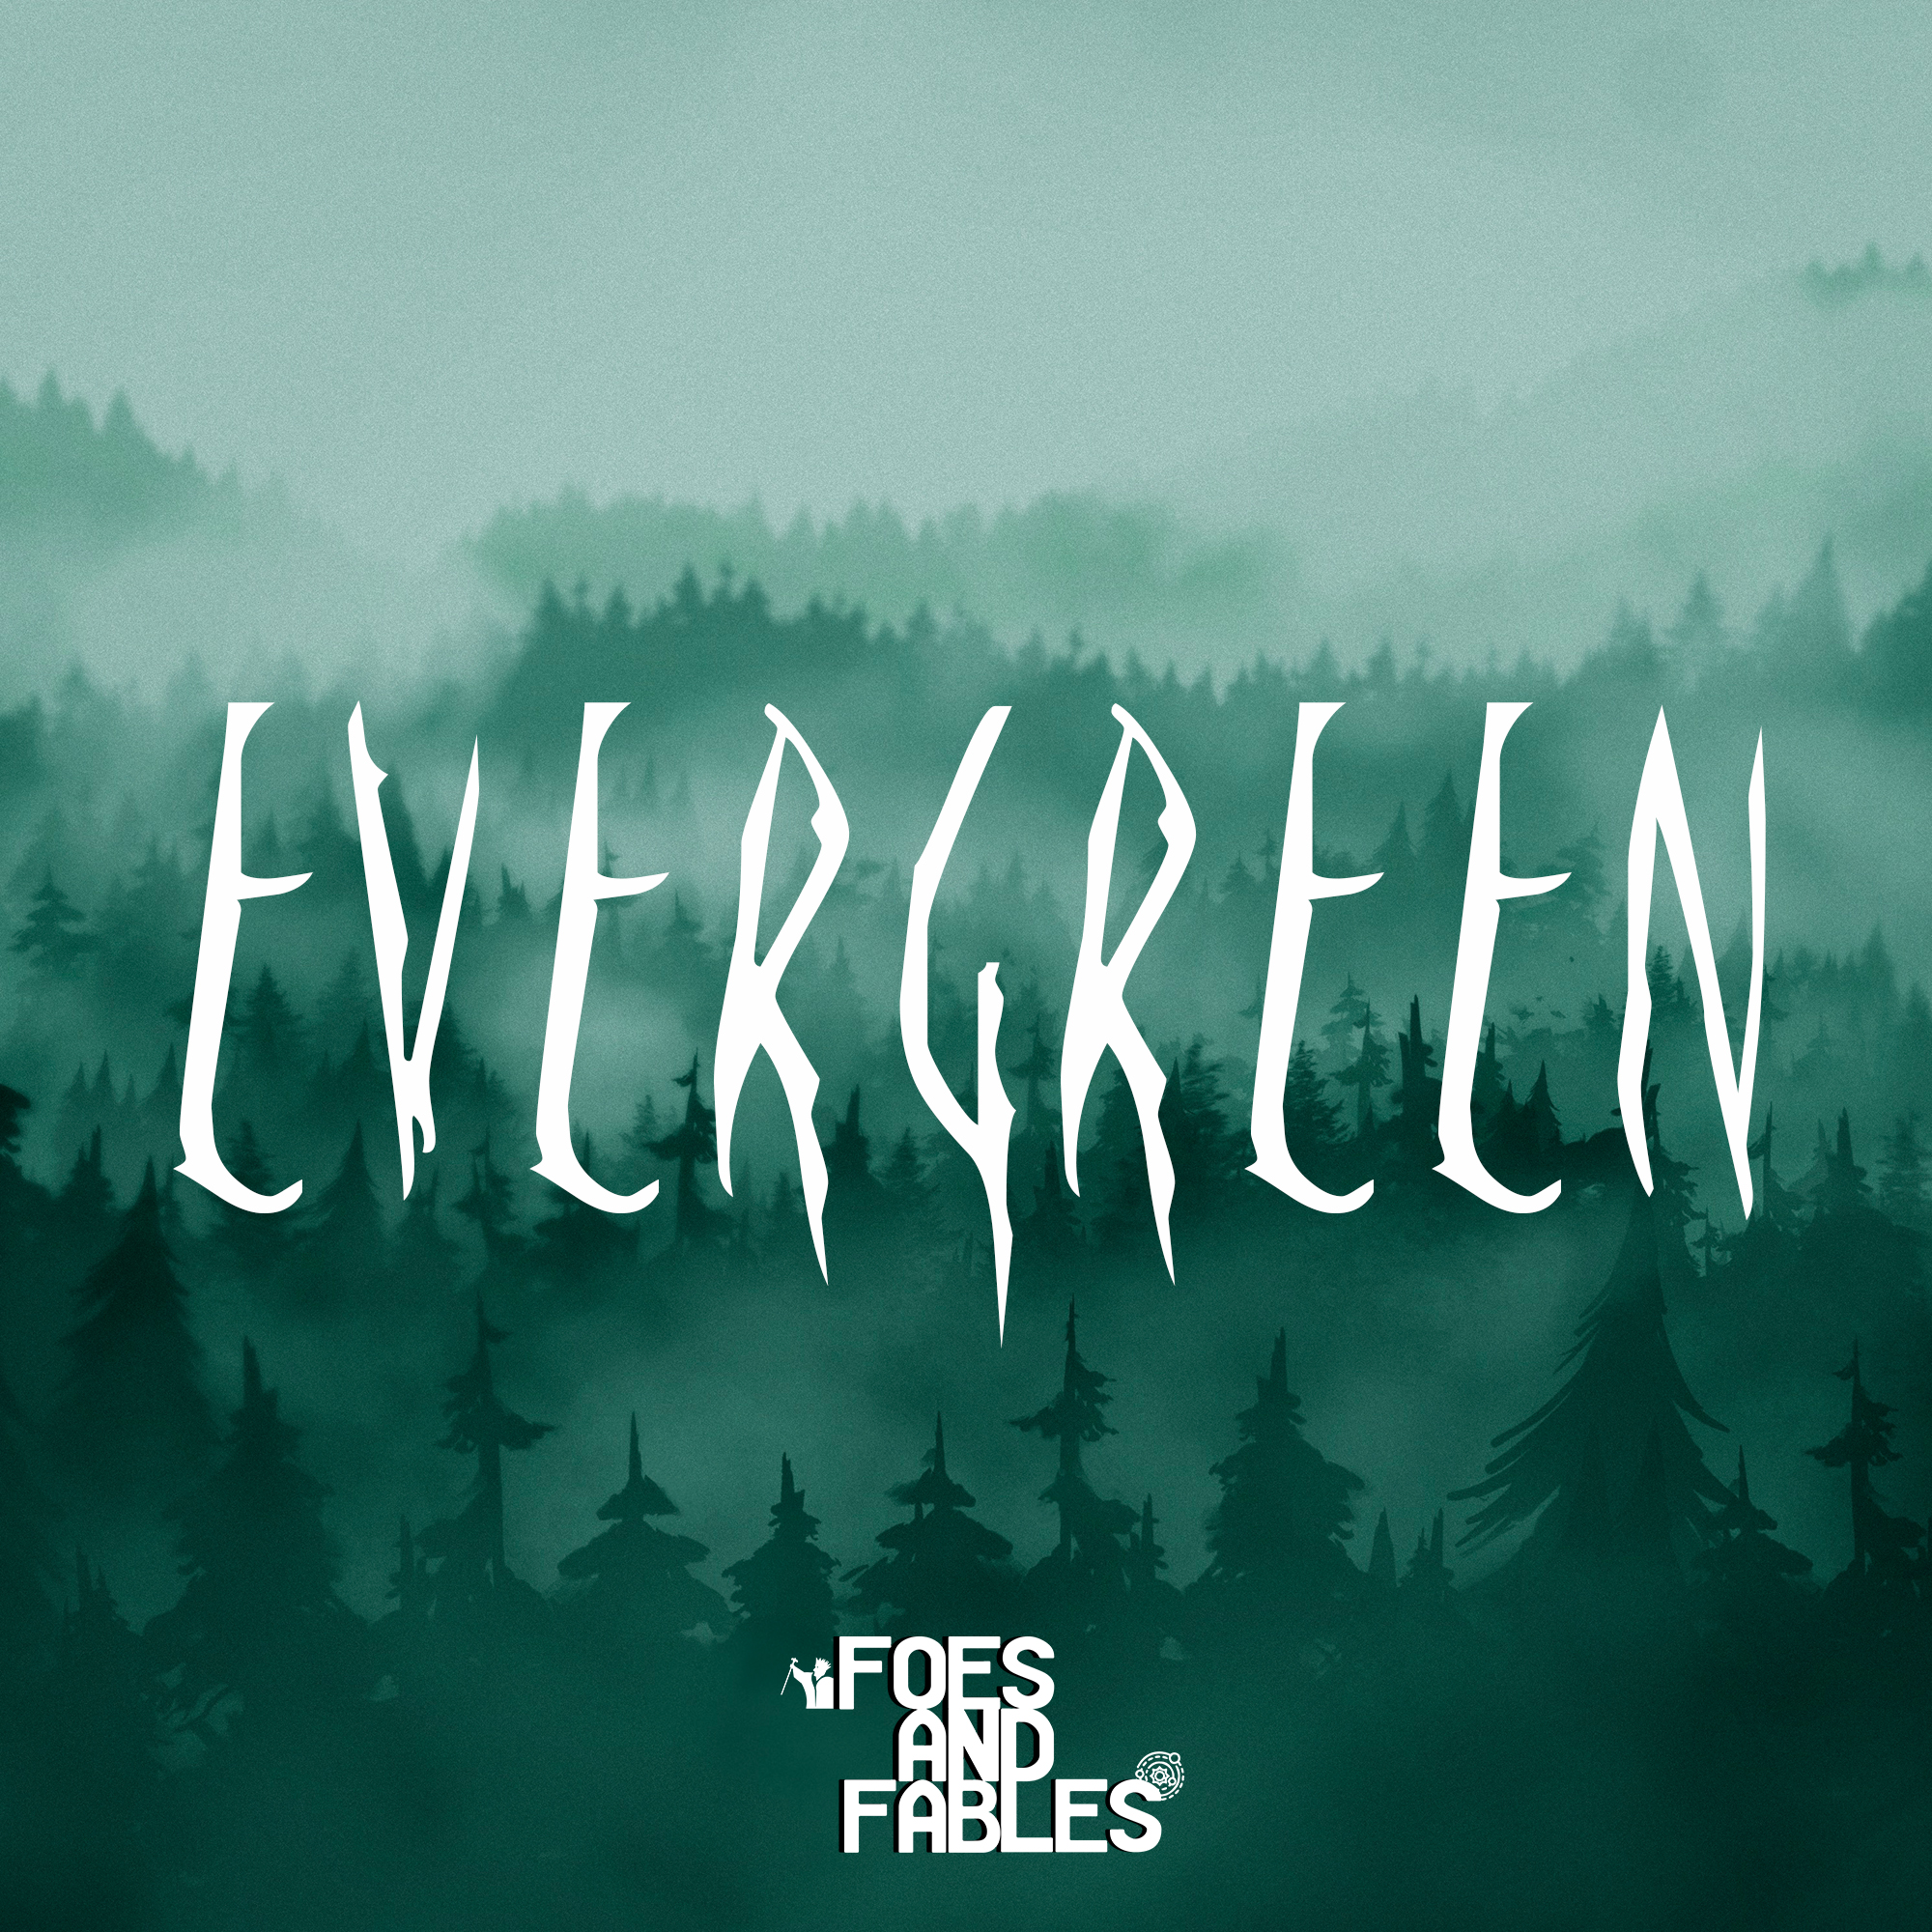 A Recap of Campaign 1 | Evergreen